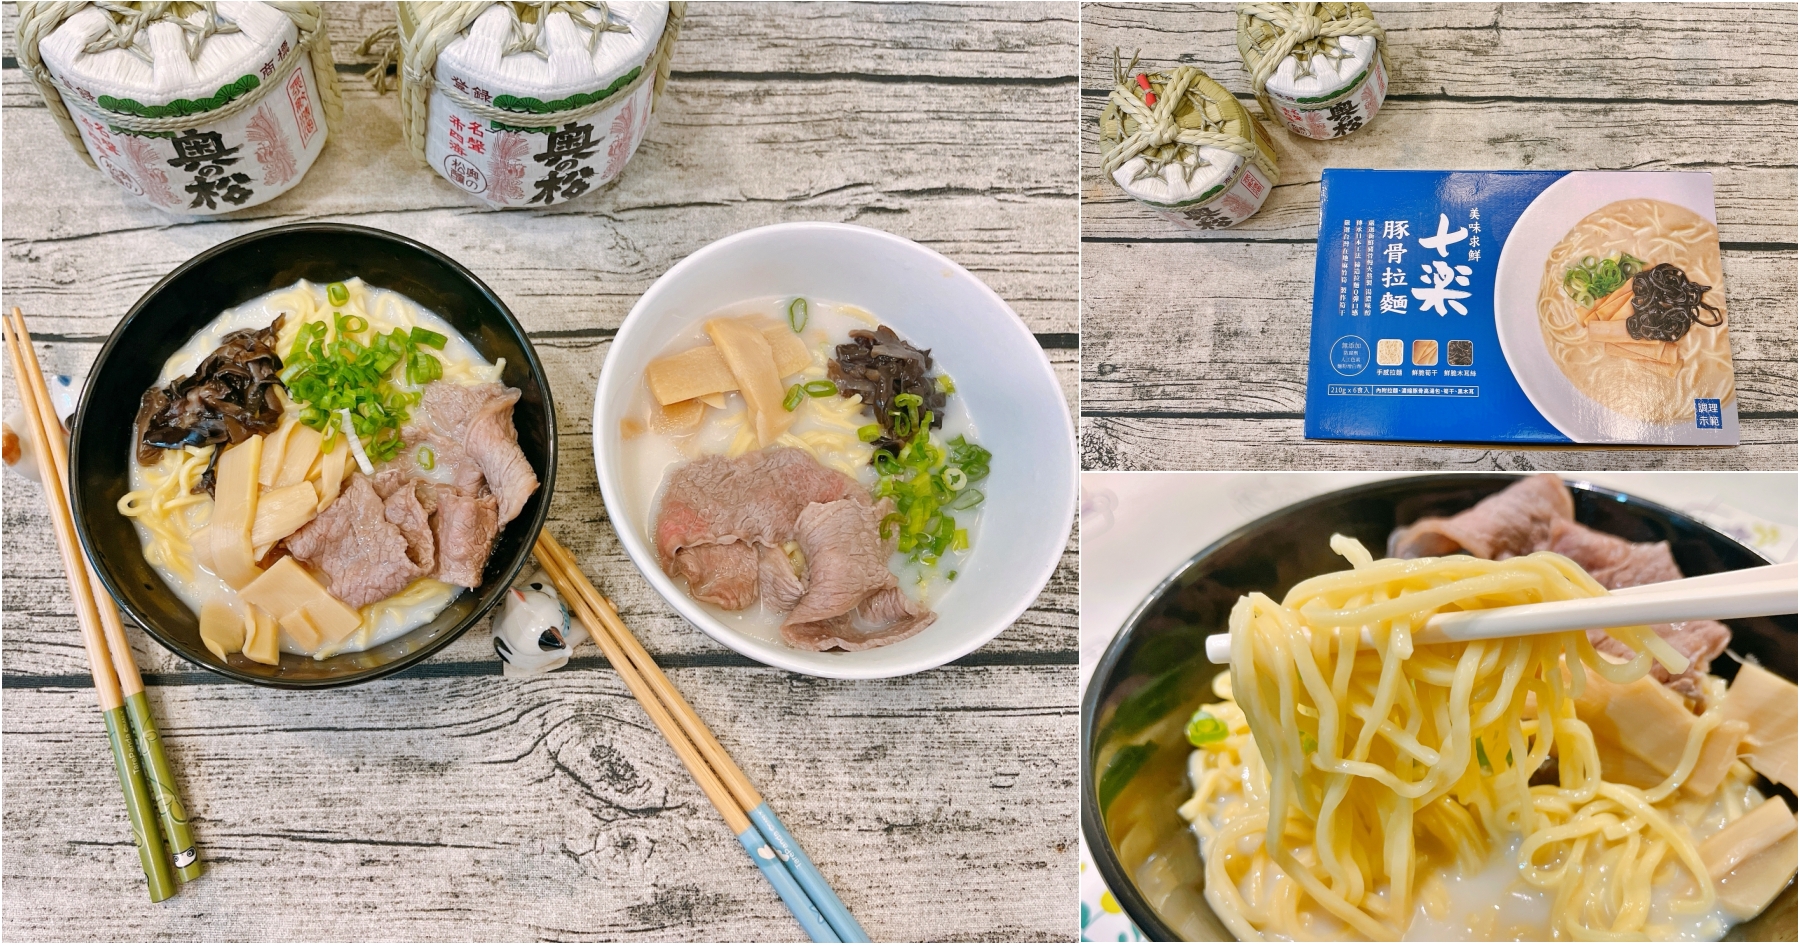 延伸閱讀：[全台美食]十樂豚骨拉麵|COSTCO販售冷藏拉麵組~在家就能享受日式拉麵．經濟實惠好選擇